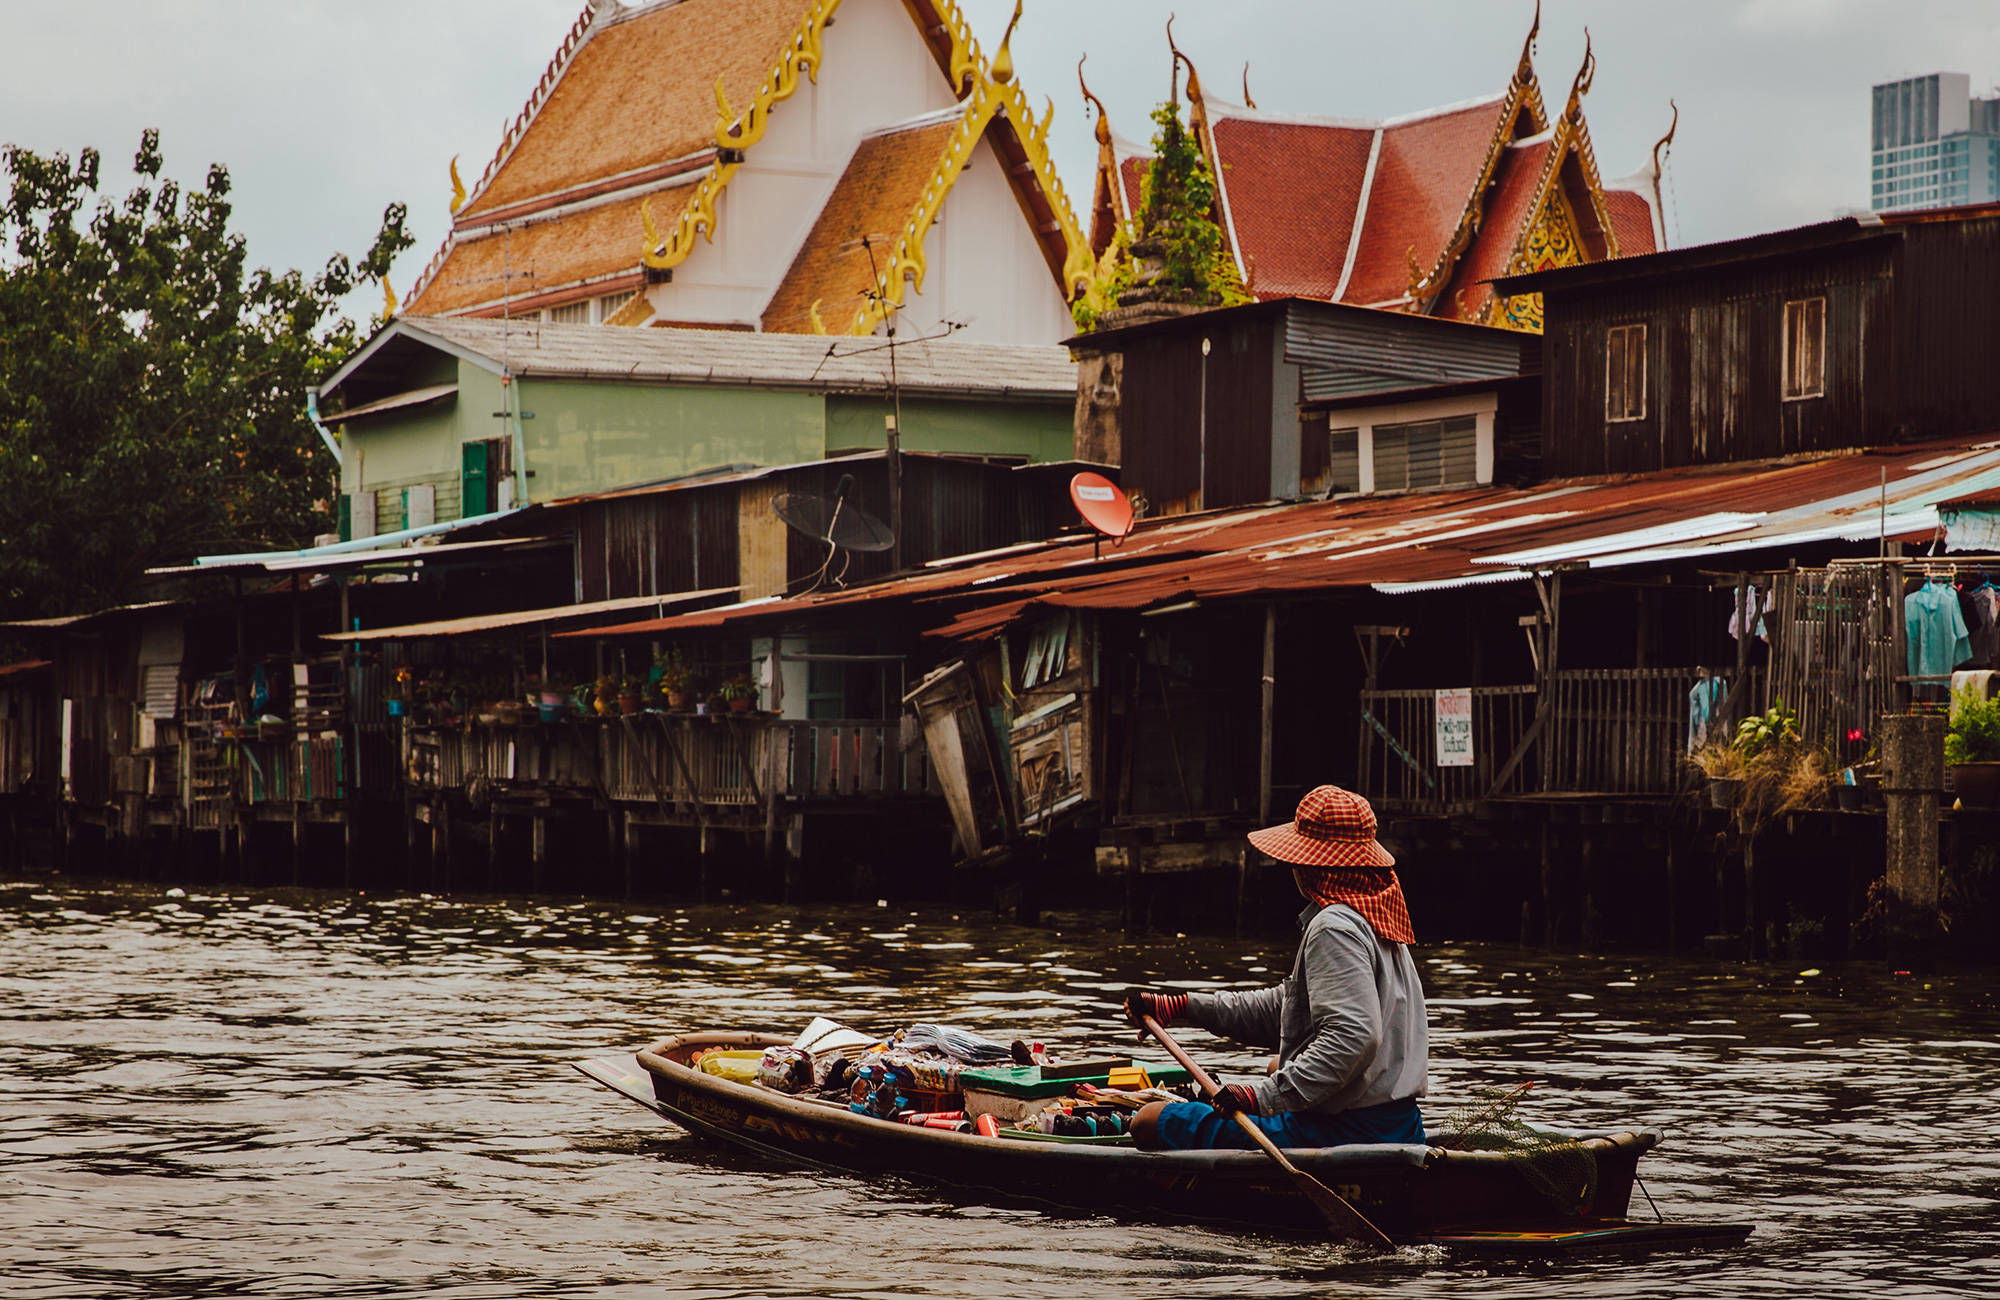 rejser til bangkok - oplev bangkok på din rundrejse